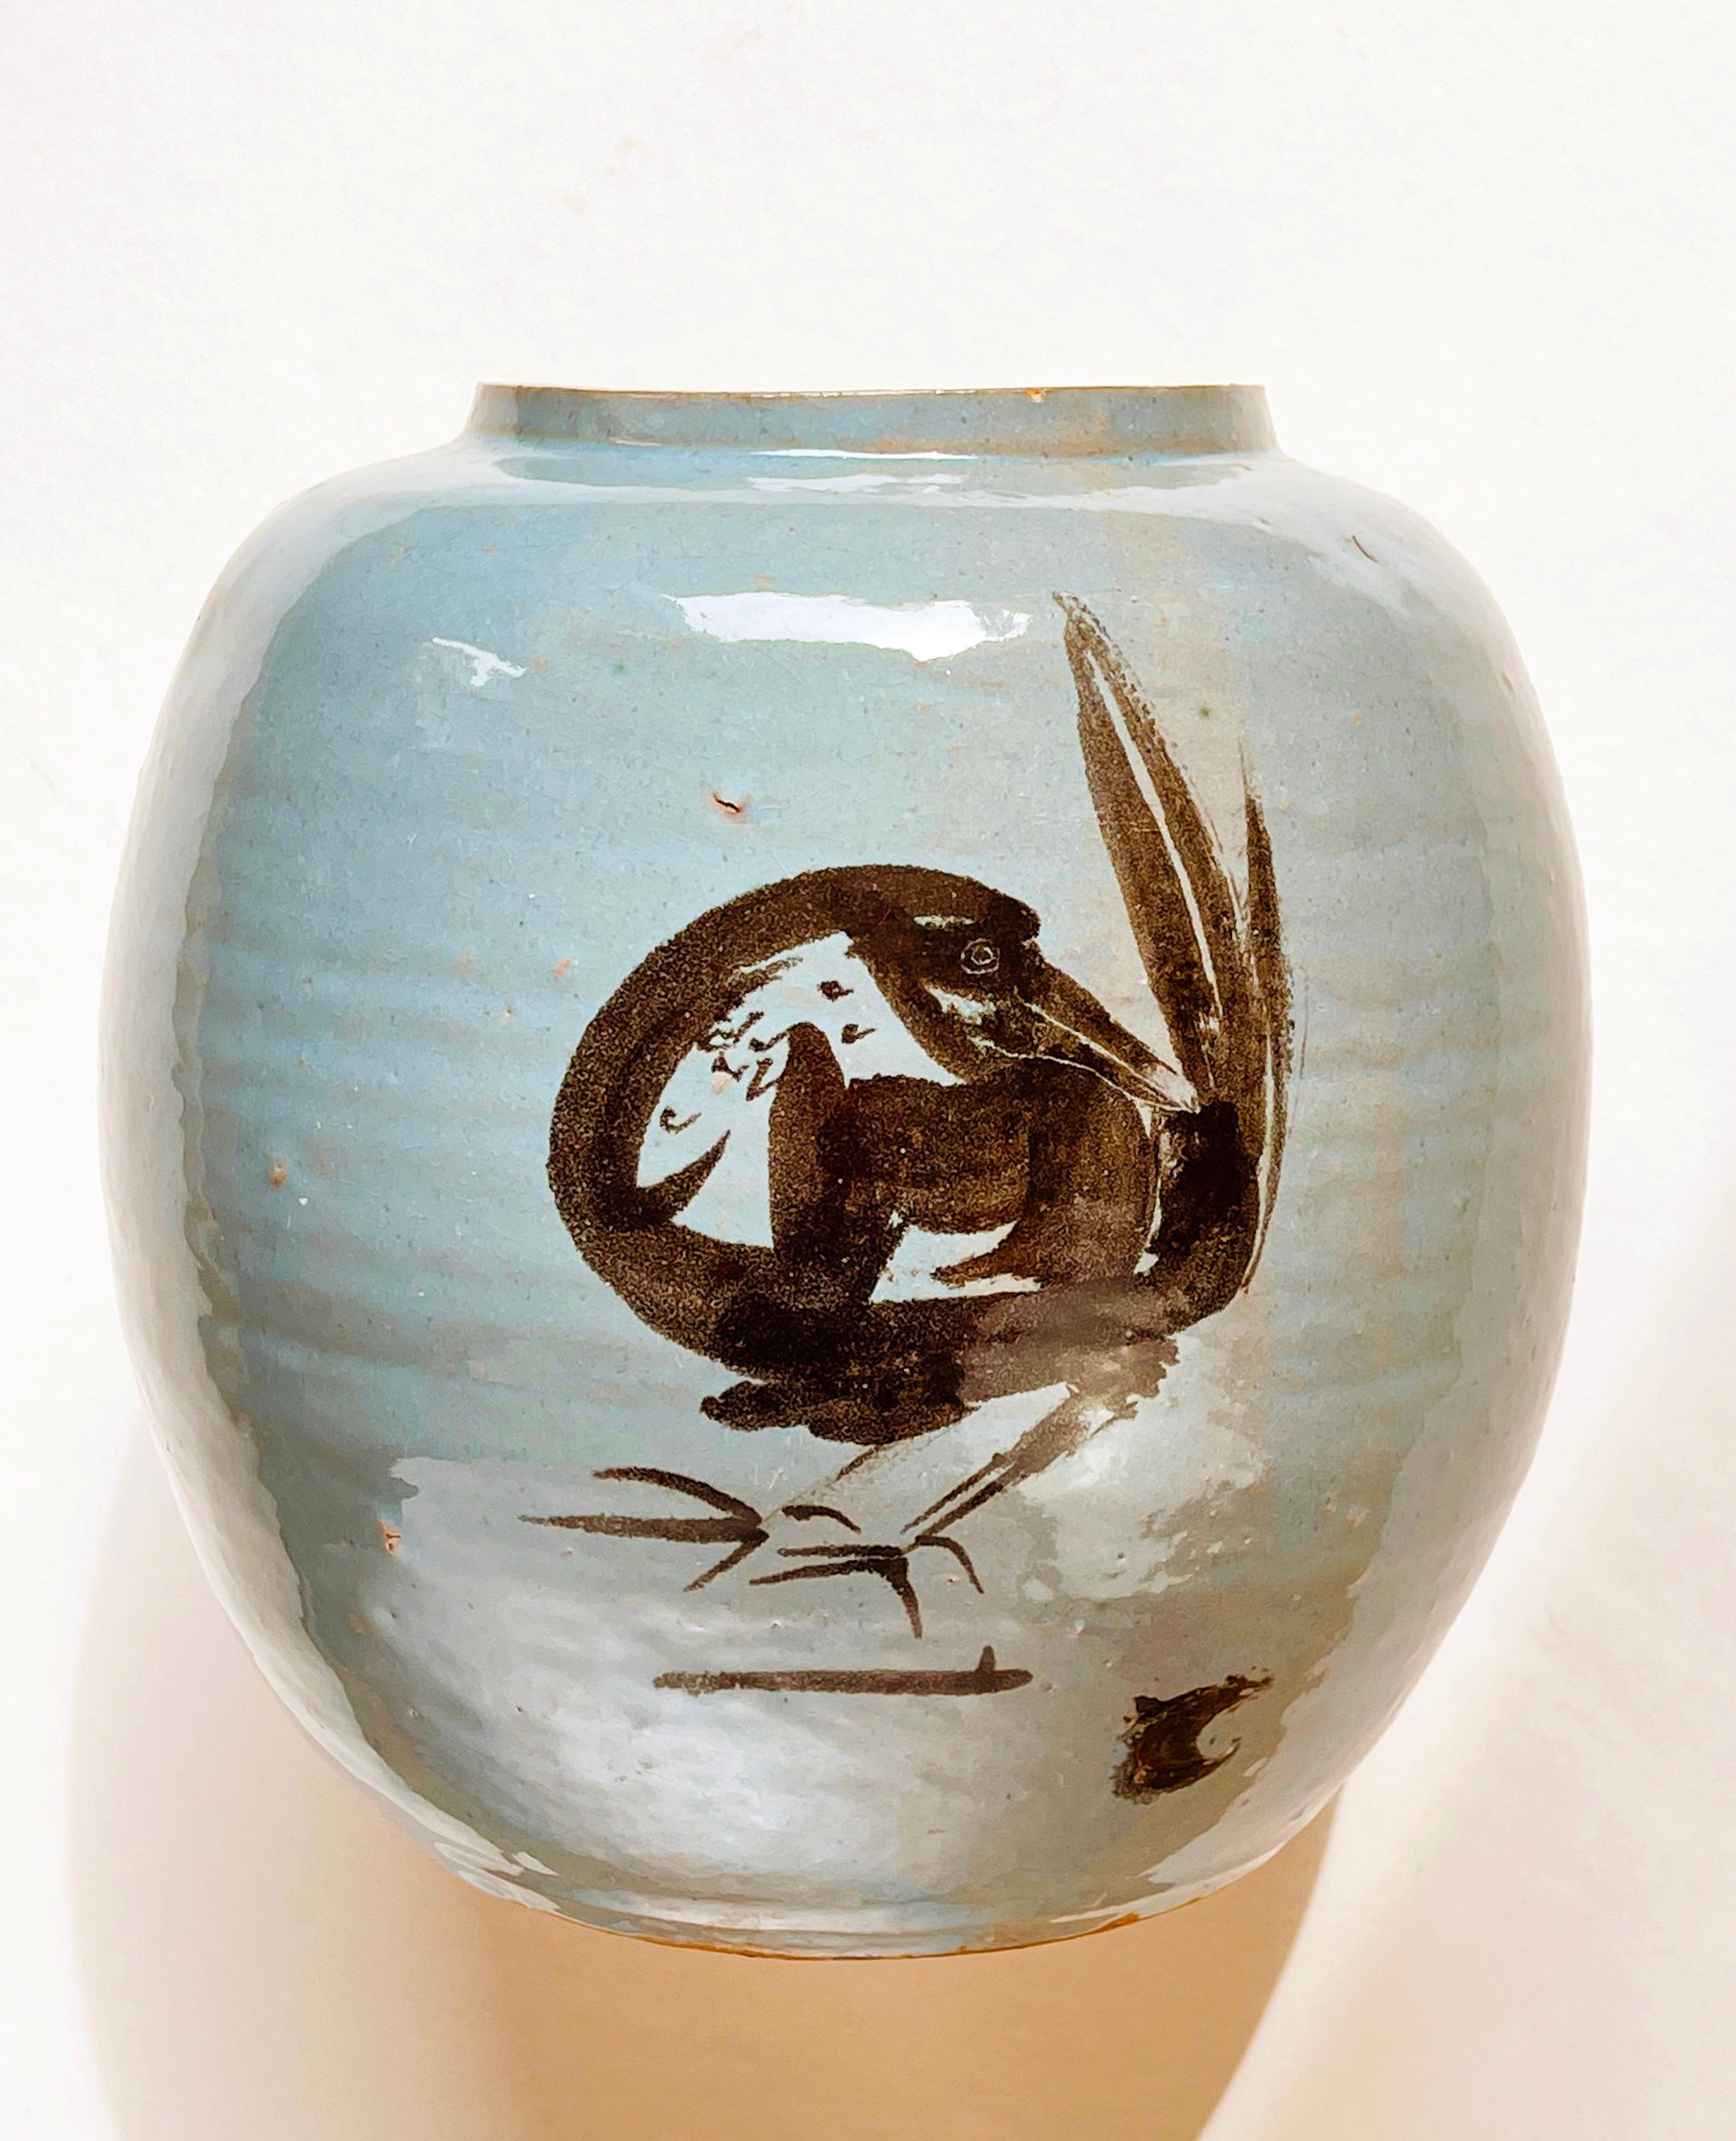 Wunderschön, wahrscheinlich aus Japan stammend: große runde Keramikvase in eierschalenblauer bis türkisfarbener Glasur.
Der allgemeine Stil ist von der wunderbaren Pinselmalerei der Edo-Zeit (1603 bis 1868) inspiriert, in der alles mit wenigen